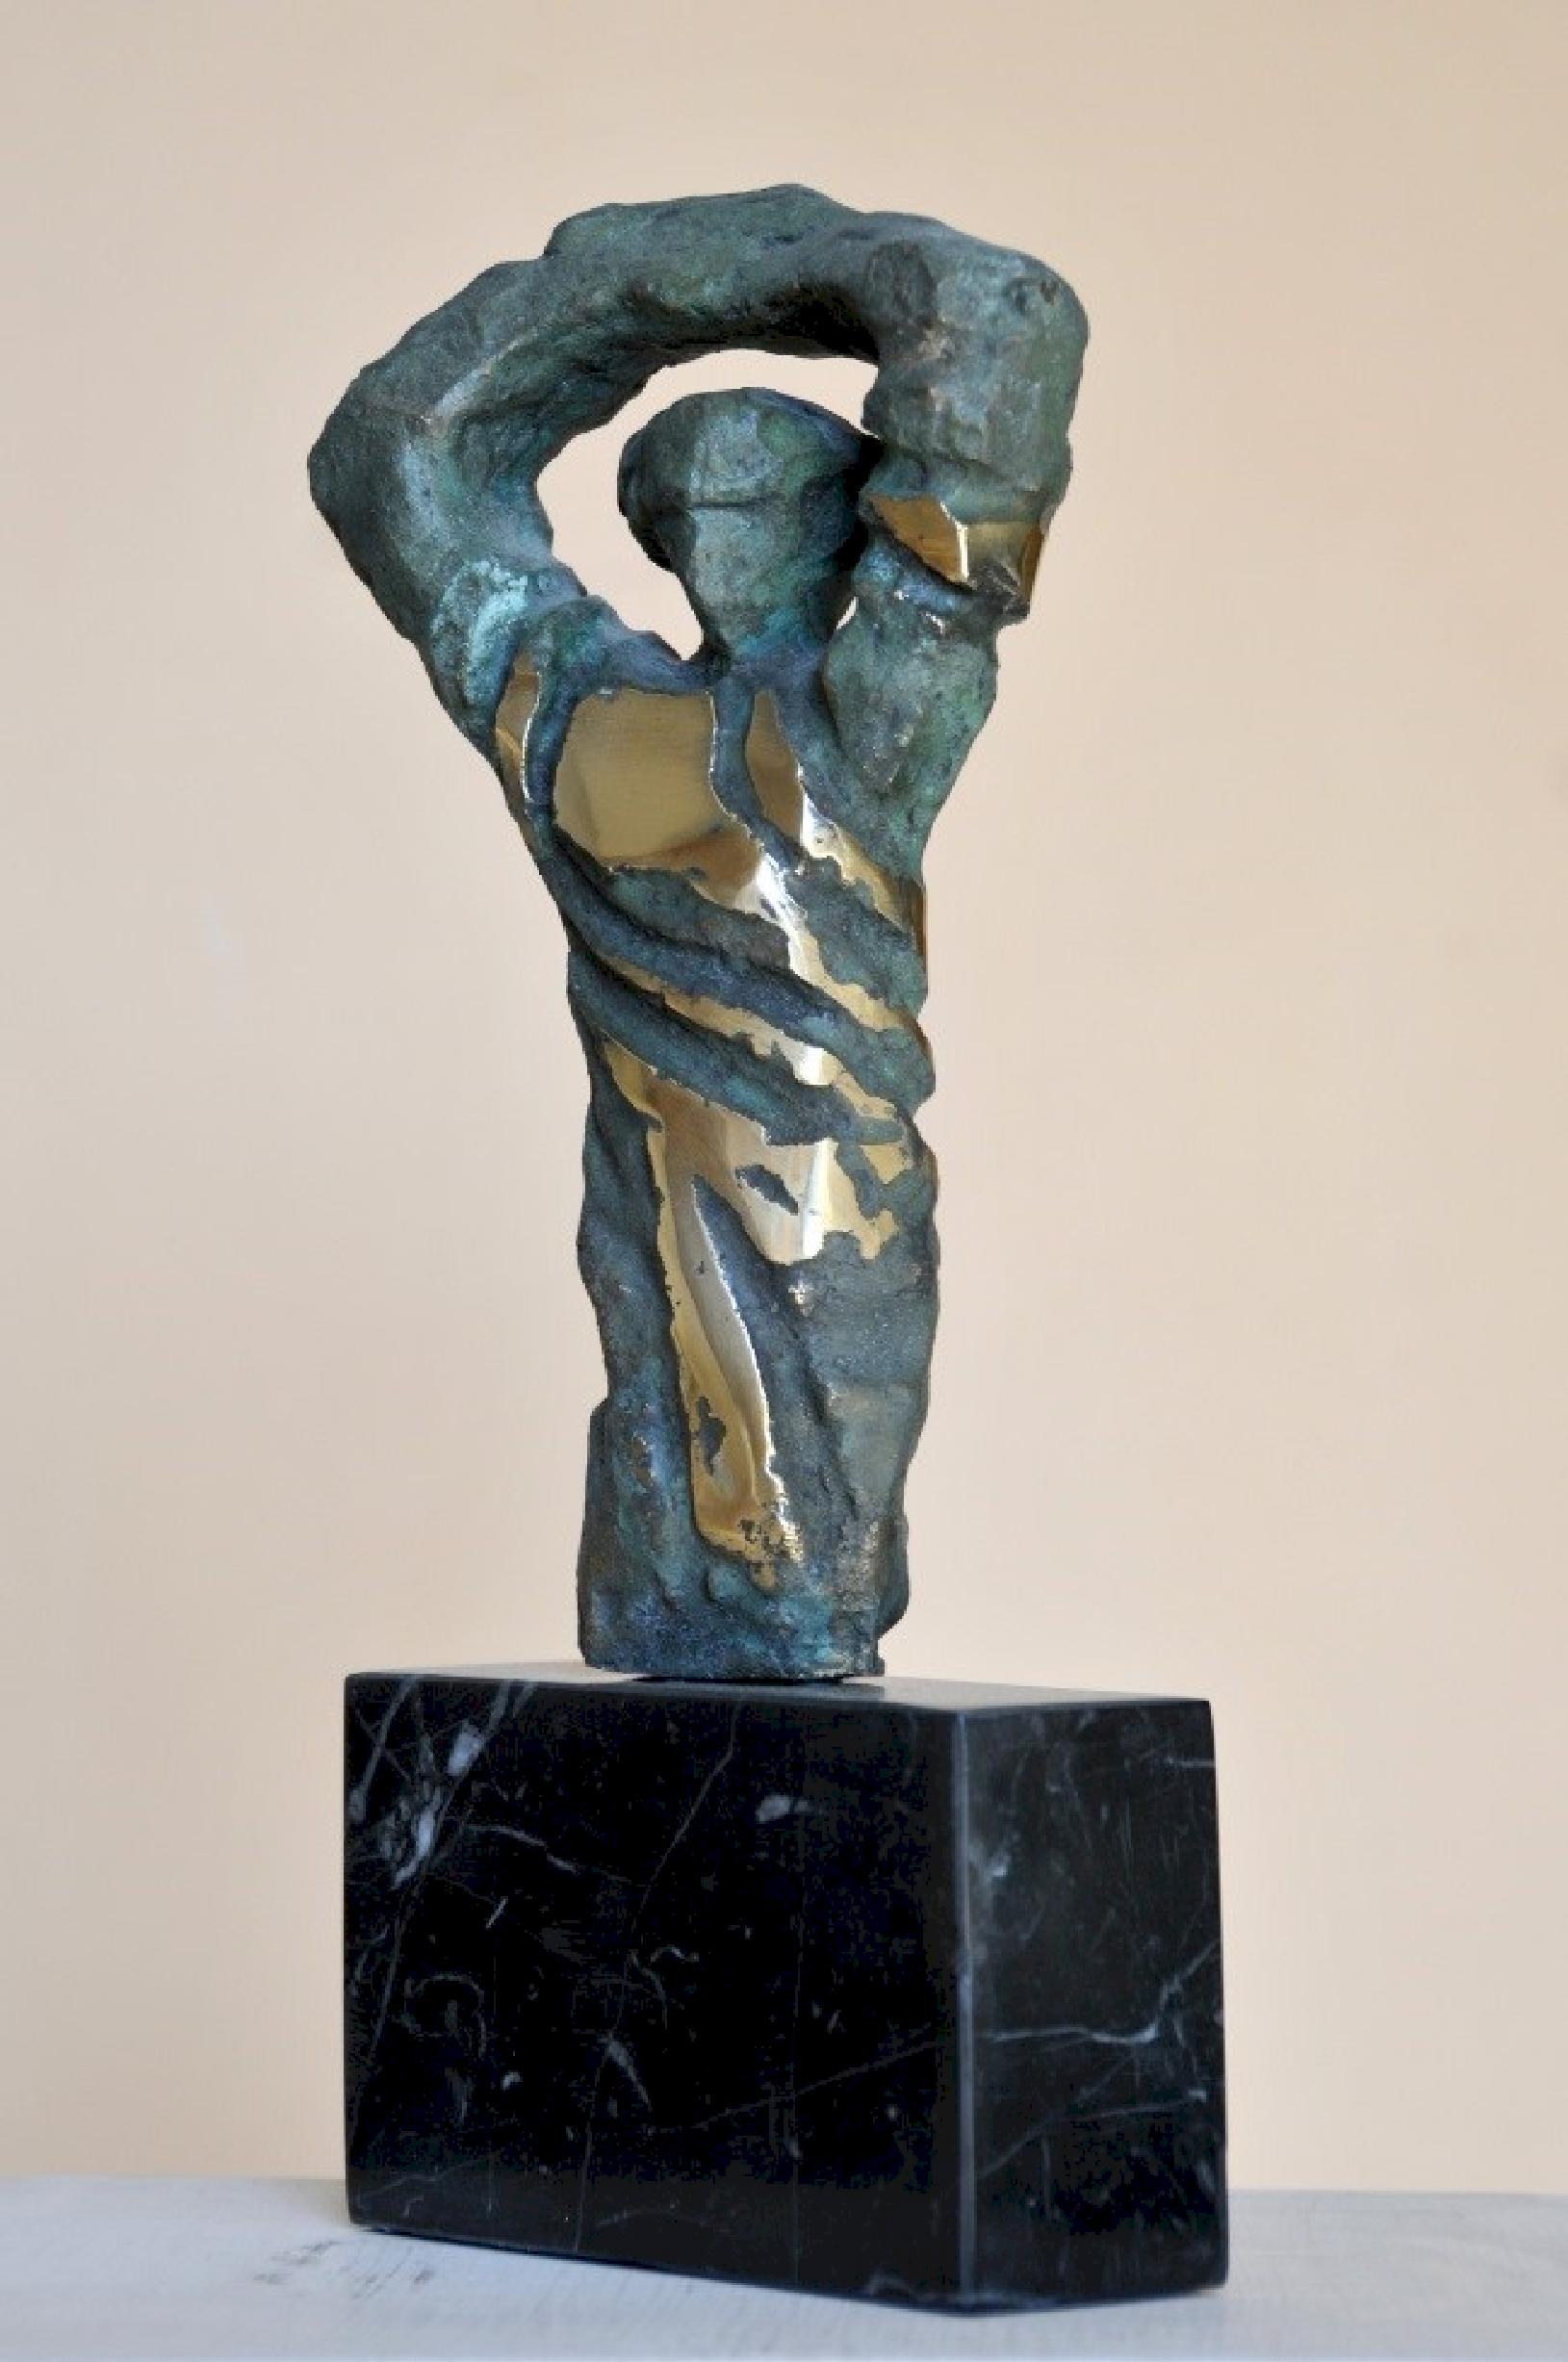 Sculpture en bronze "Movement" de 5" x 4" x 2" pouces par Sarkis Tossonian					

Sarkis Tossoonian est né à Alexandrie en 1953. Il est diplômé de la Faculté des Beaux-Arts/Sculpture en 1979. Il a commencé à exposer dans des expositions individuelles